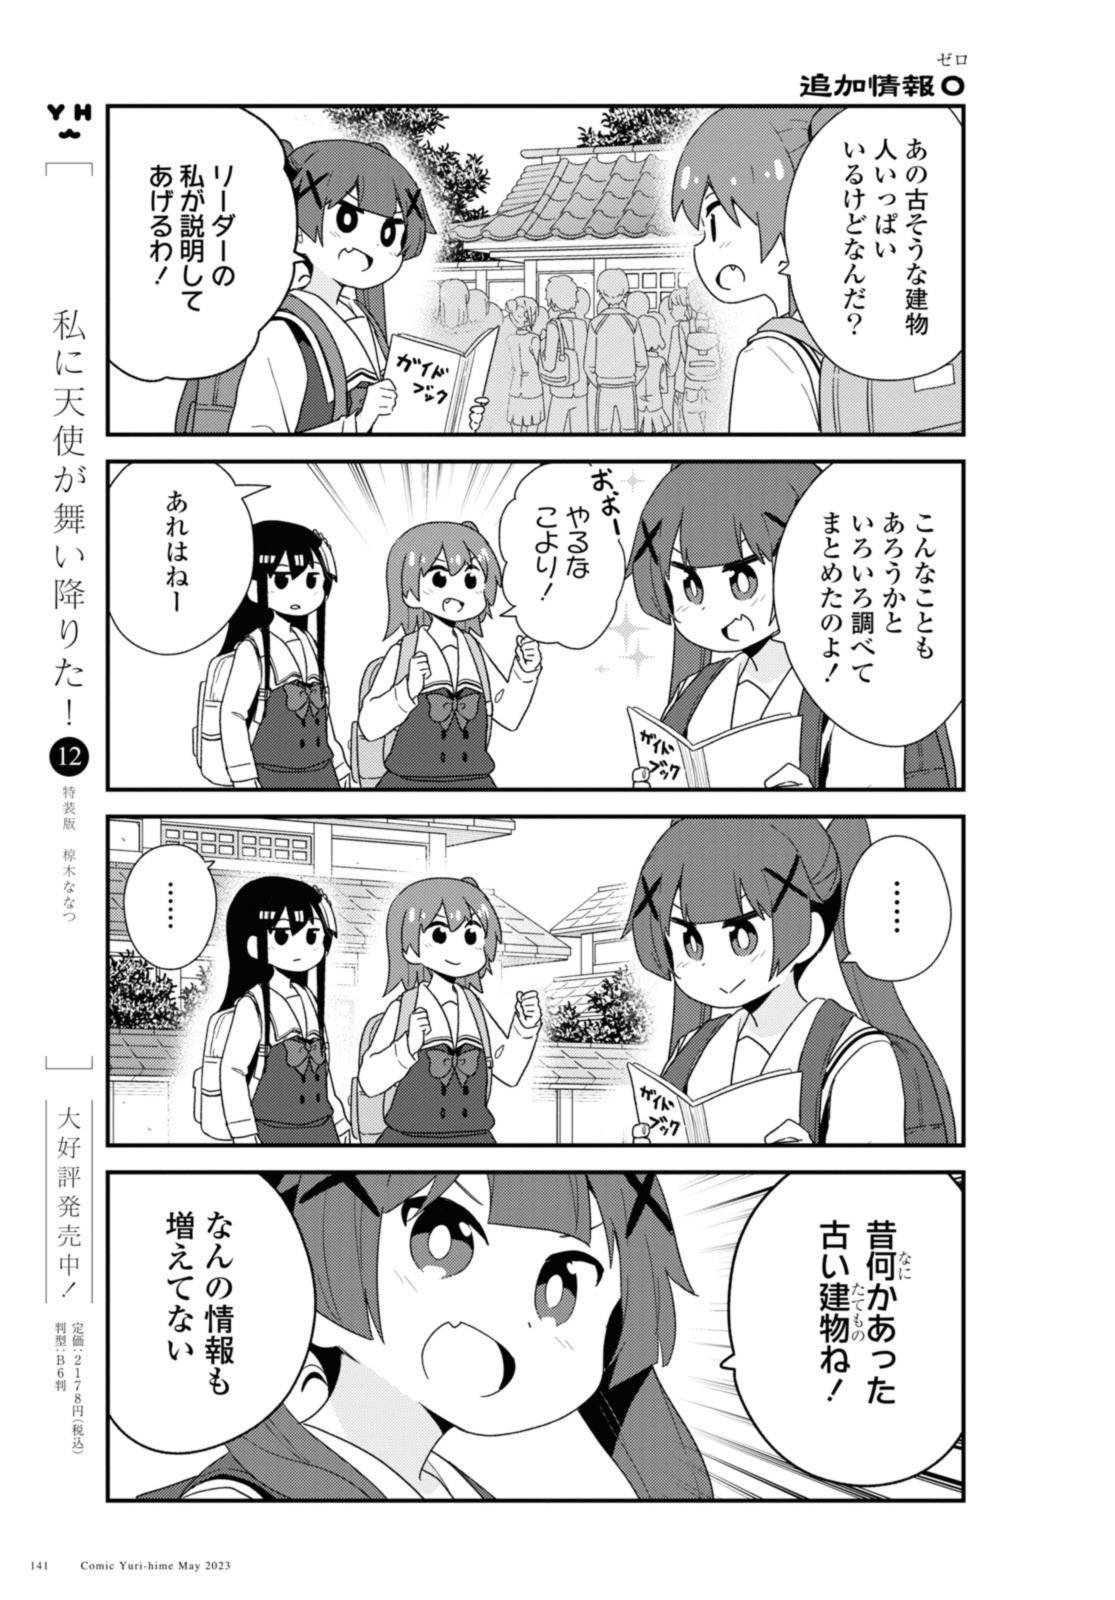 Watashi ni Tenshi ga Maiorita! - Chapter 105 - Page 3